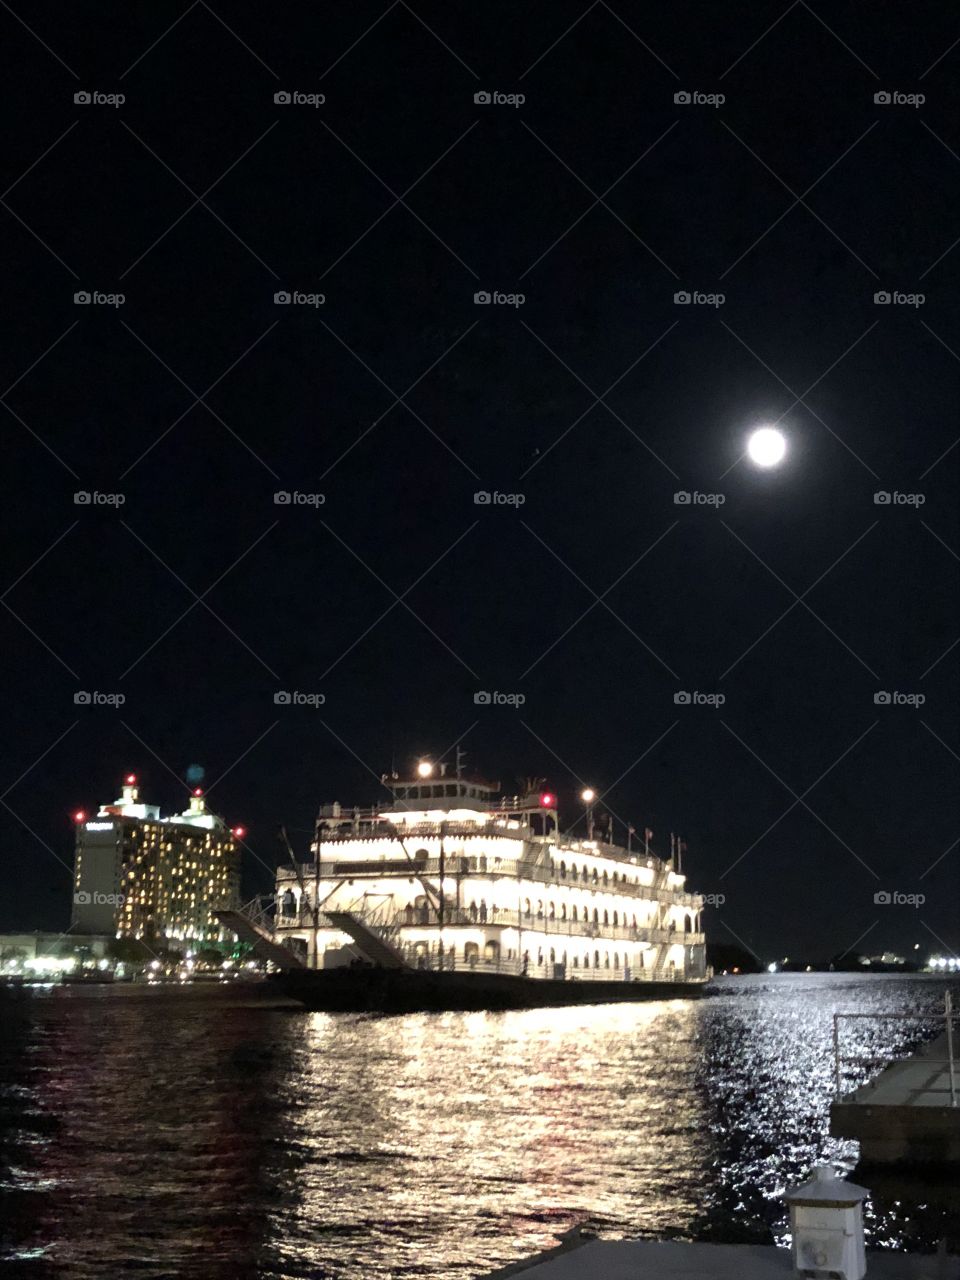 Moonlight on the Savannah